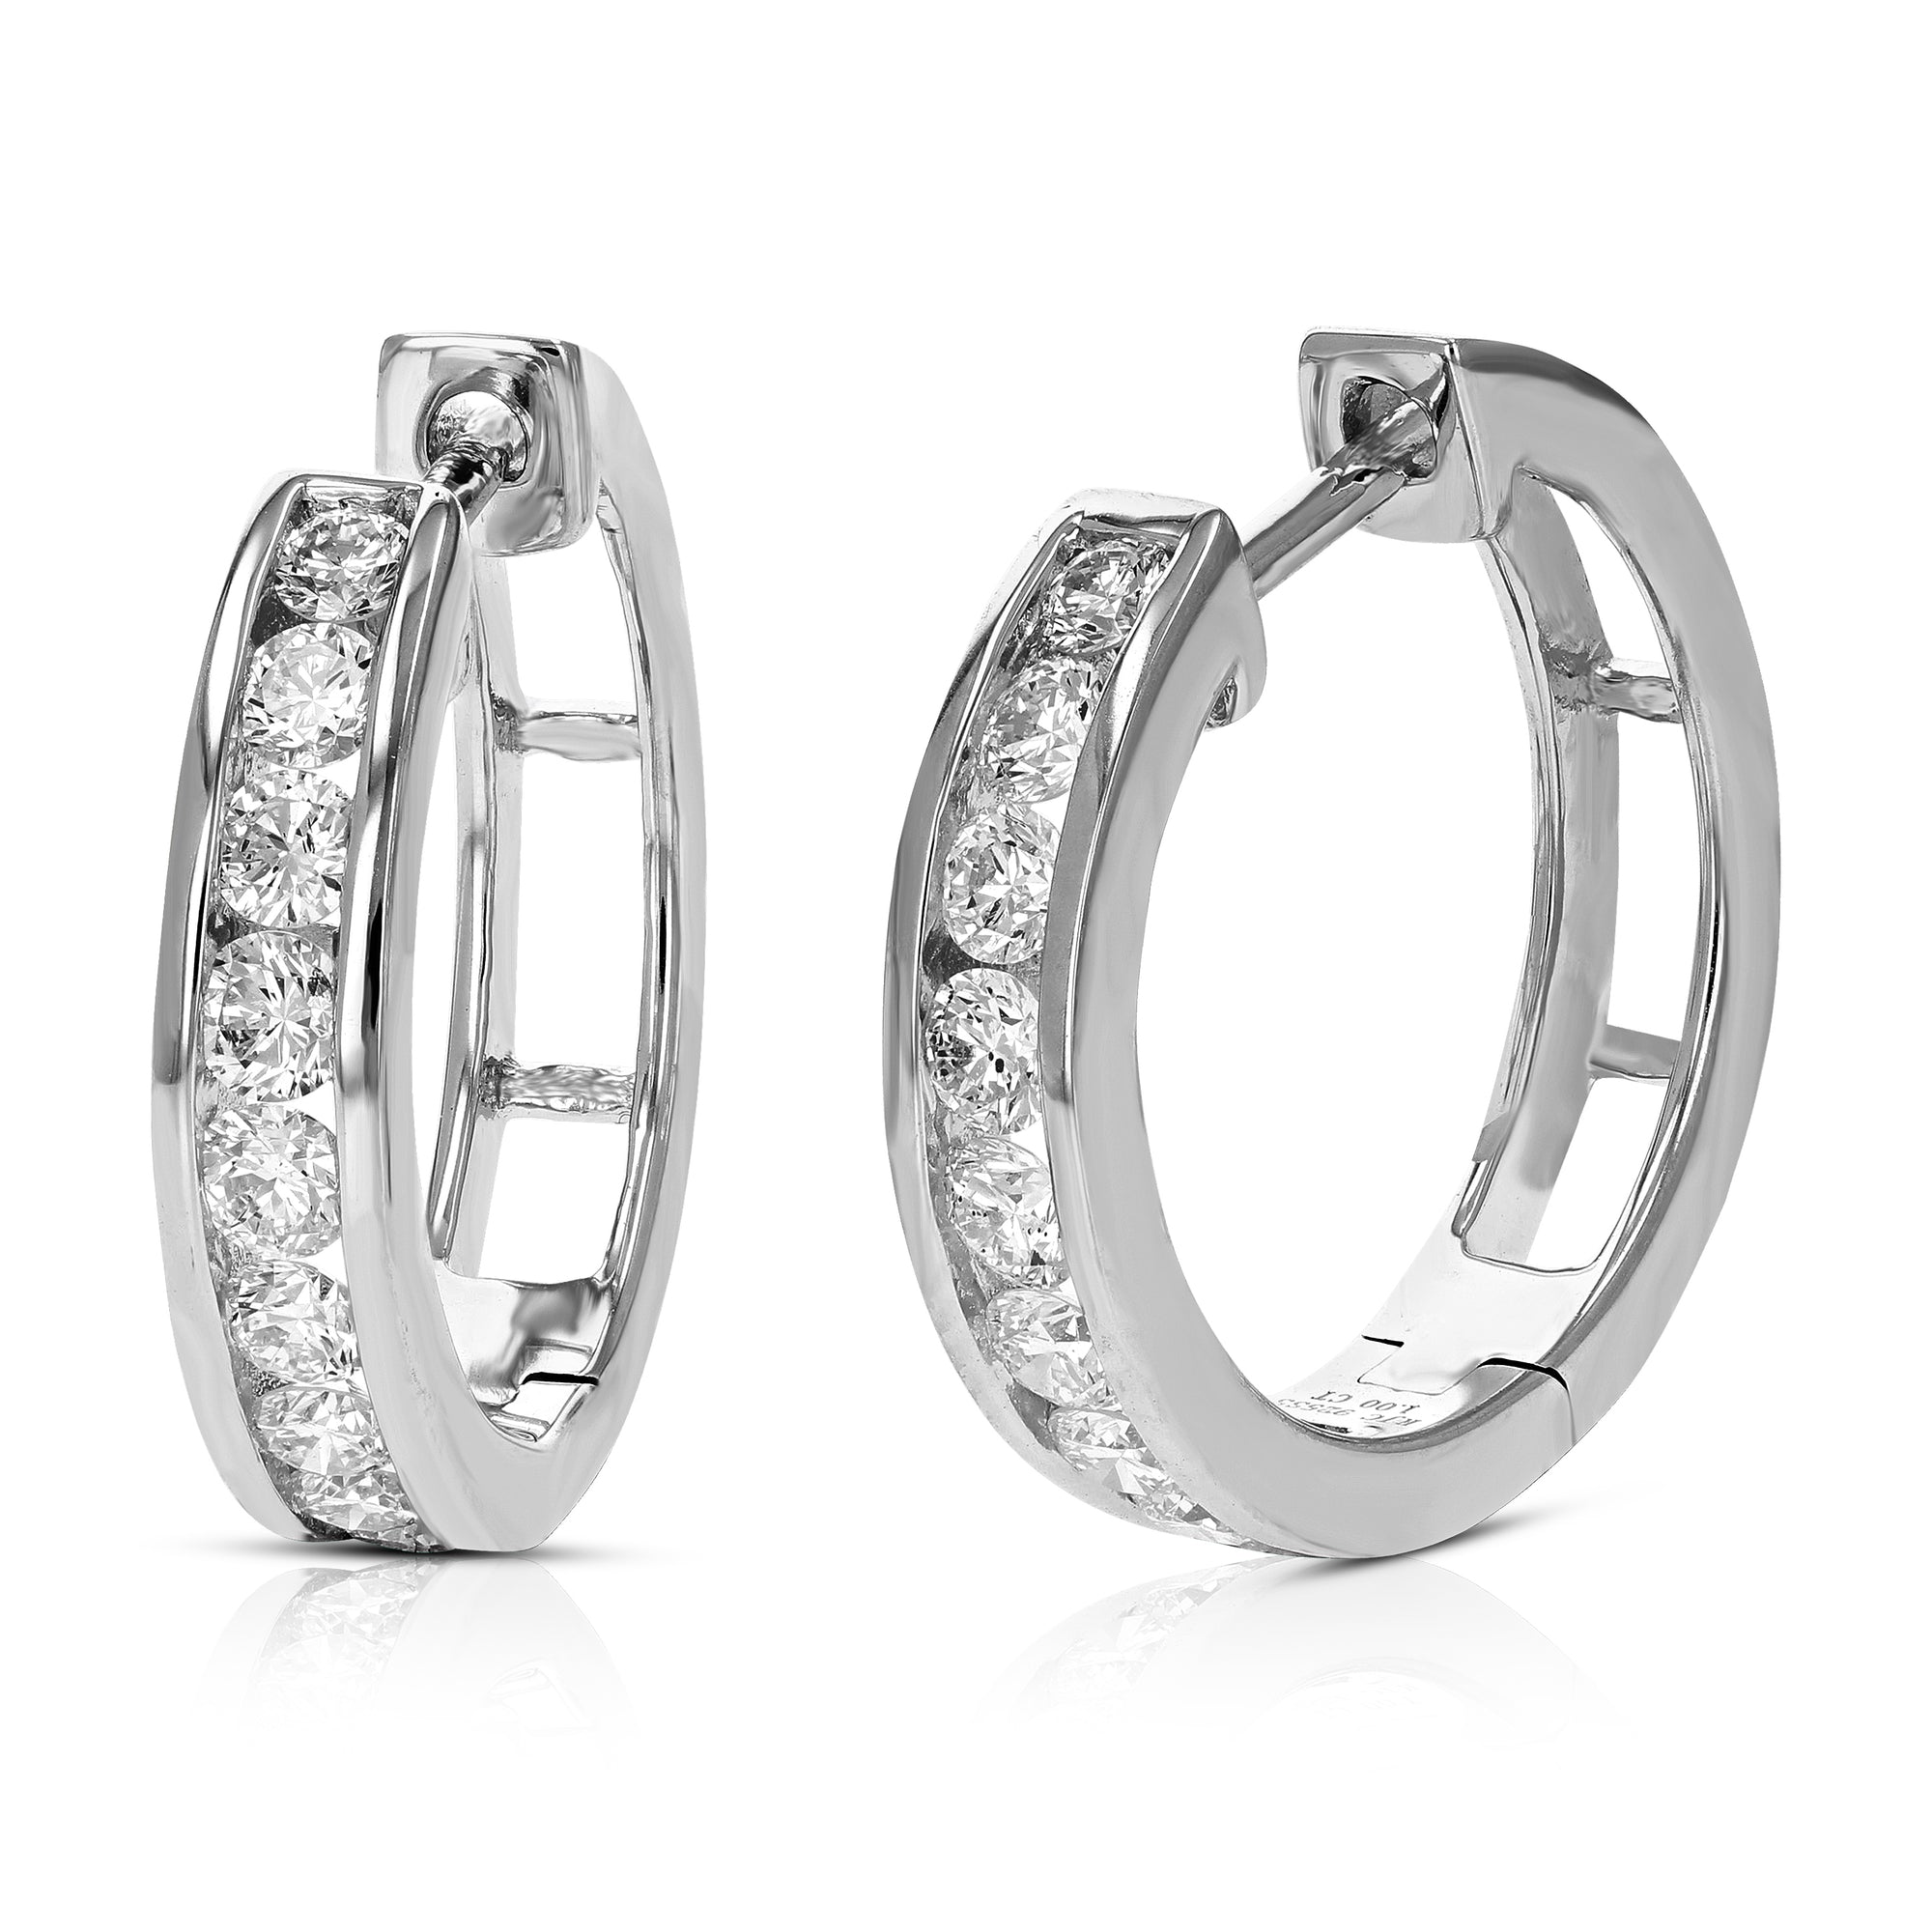 1 cttw Diamond Hoop Earrings for Women, Round Lab Grown Diamond Earrings in .925 Sterling Silver, Channel Setting, 2/3 Inch